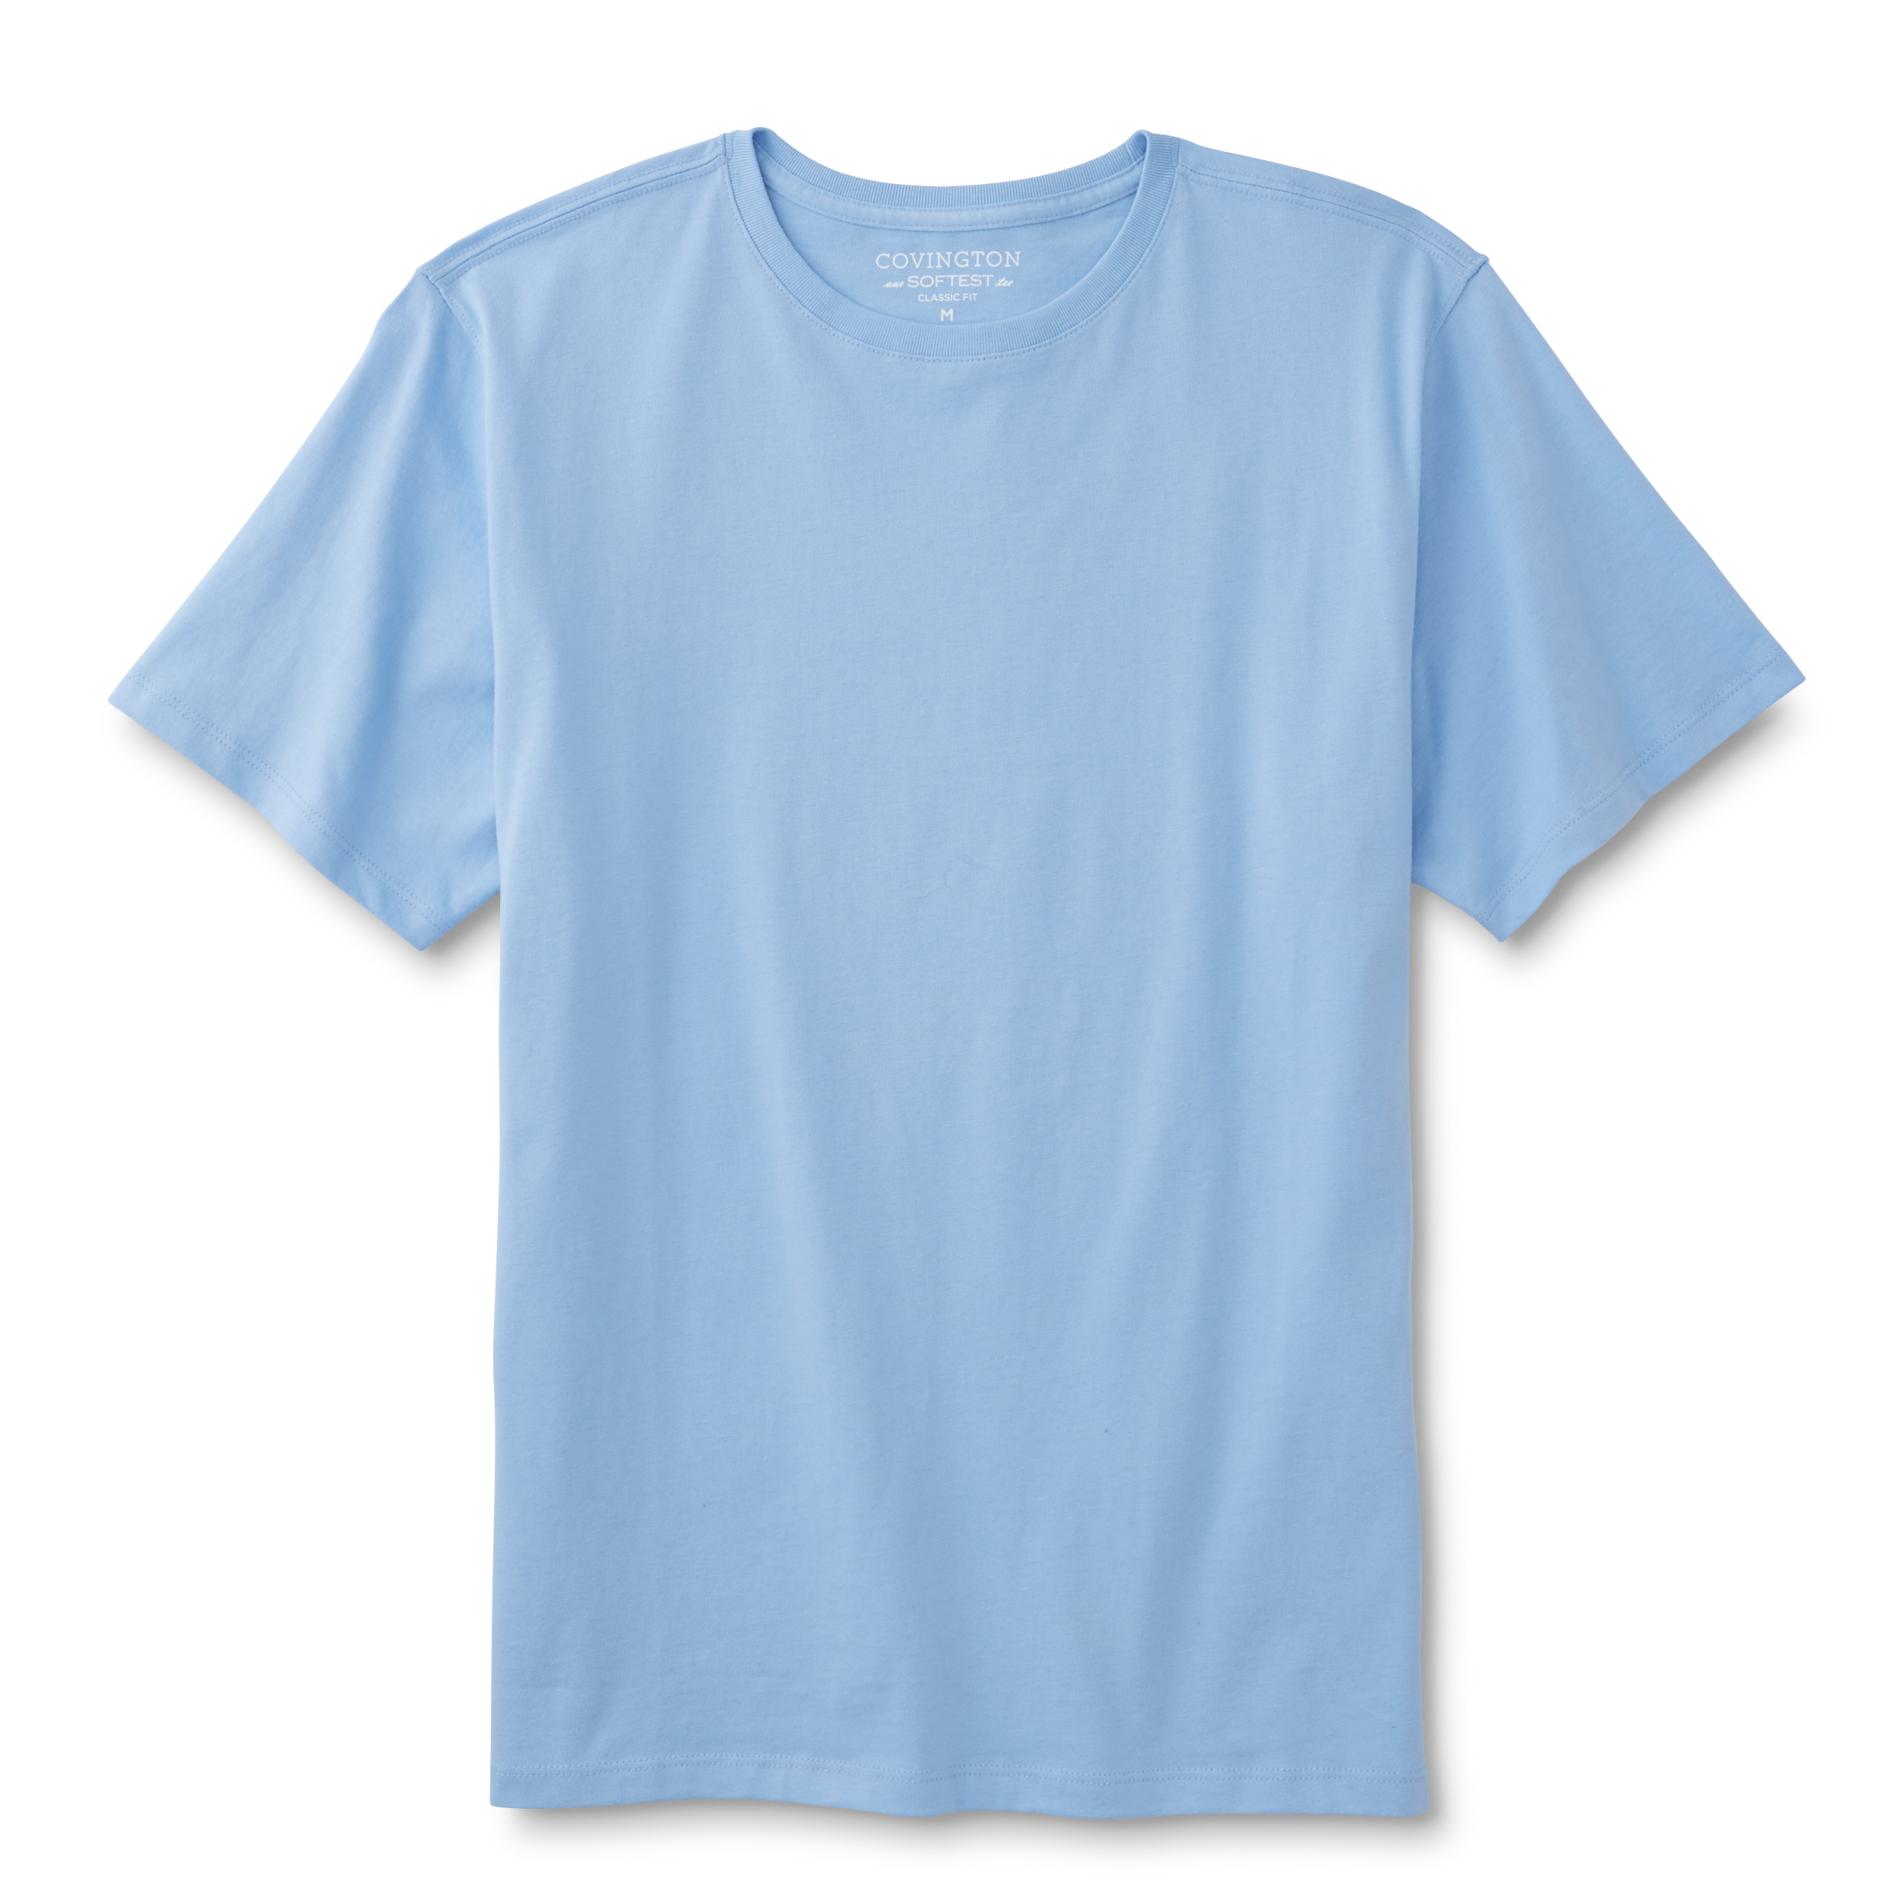 Covington Men's Big & Tall Classic Fit T-Shirt